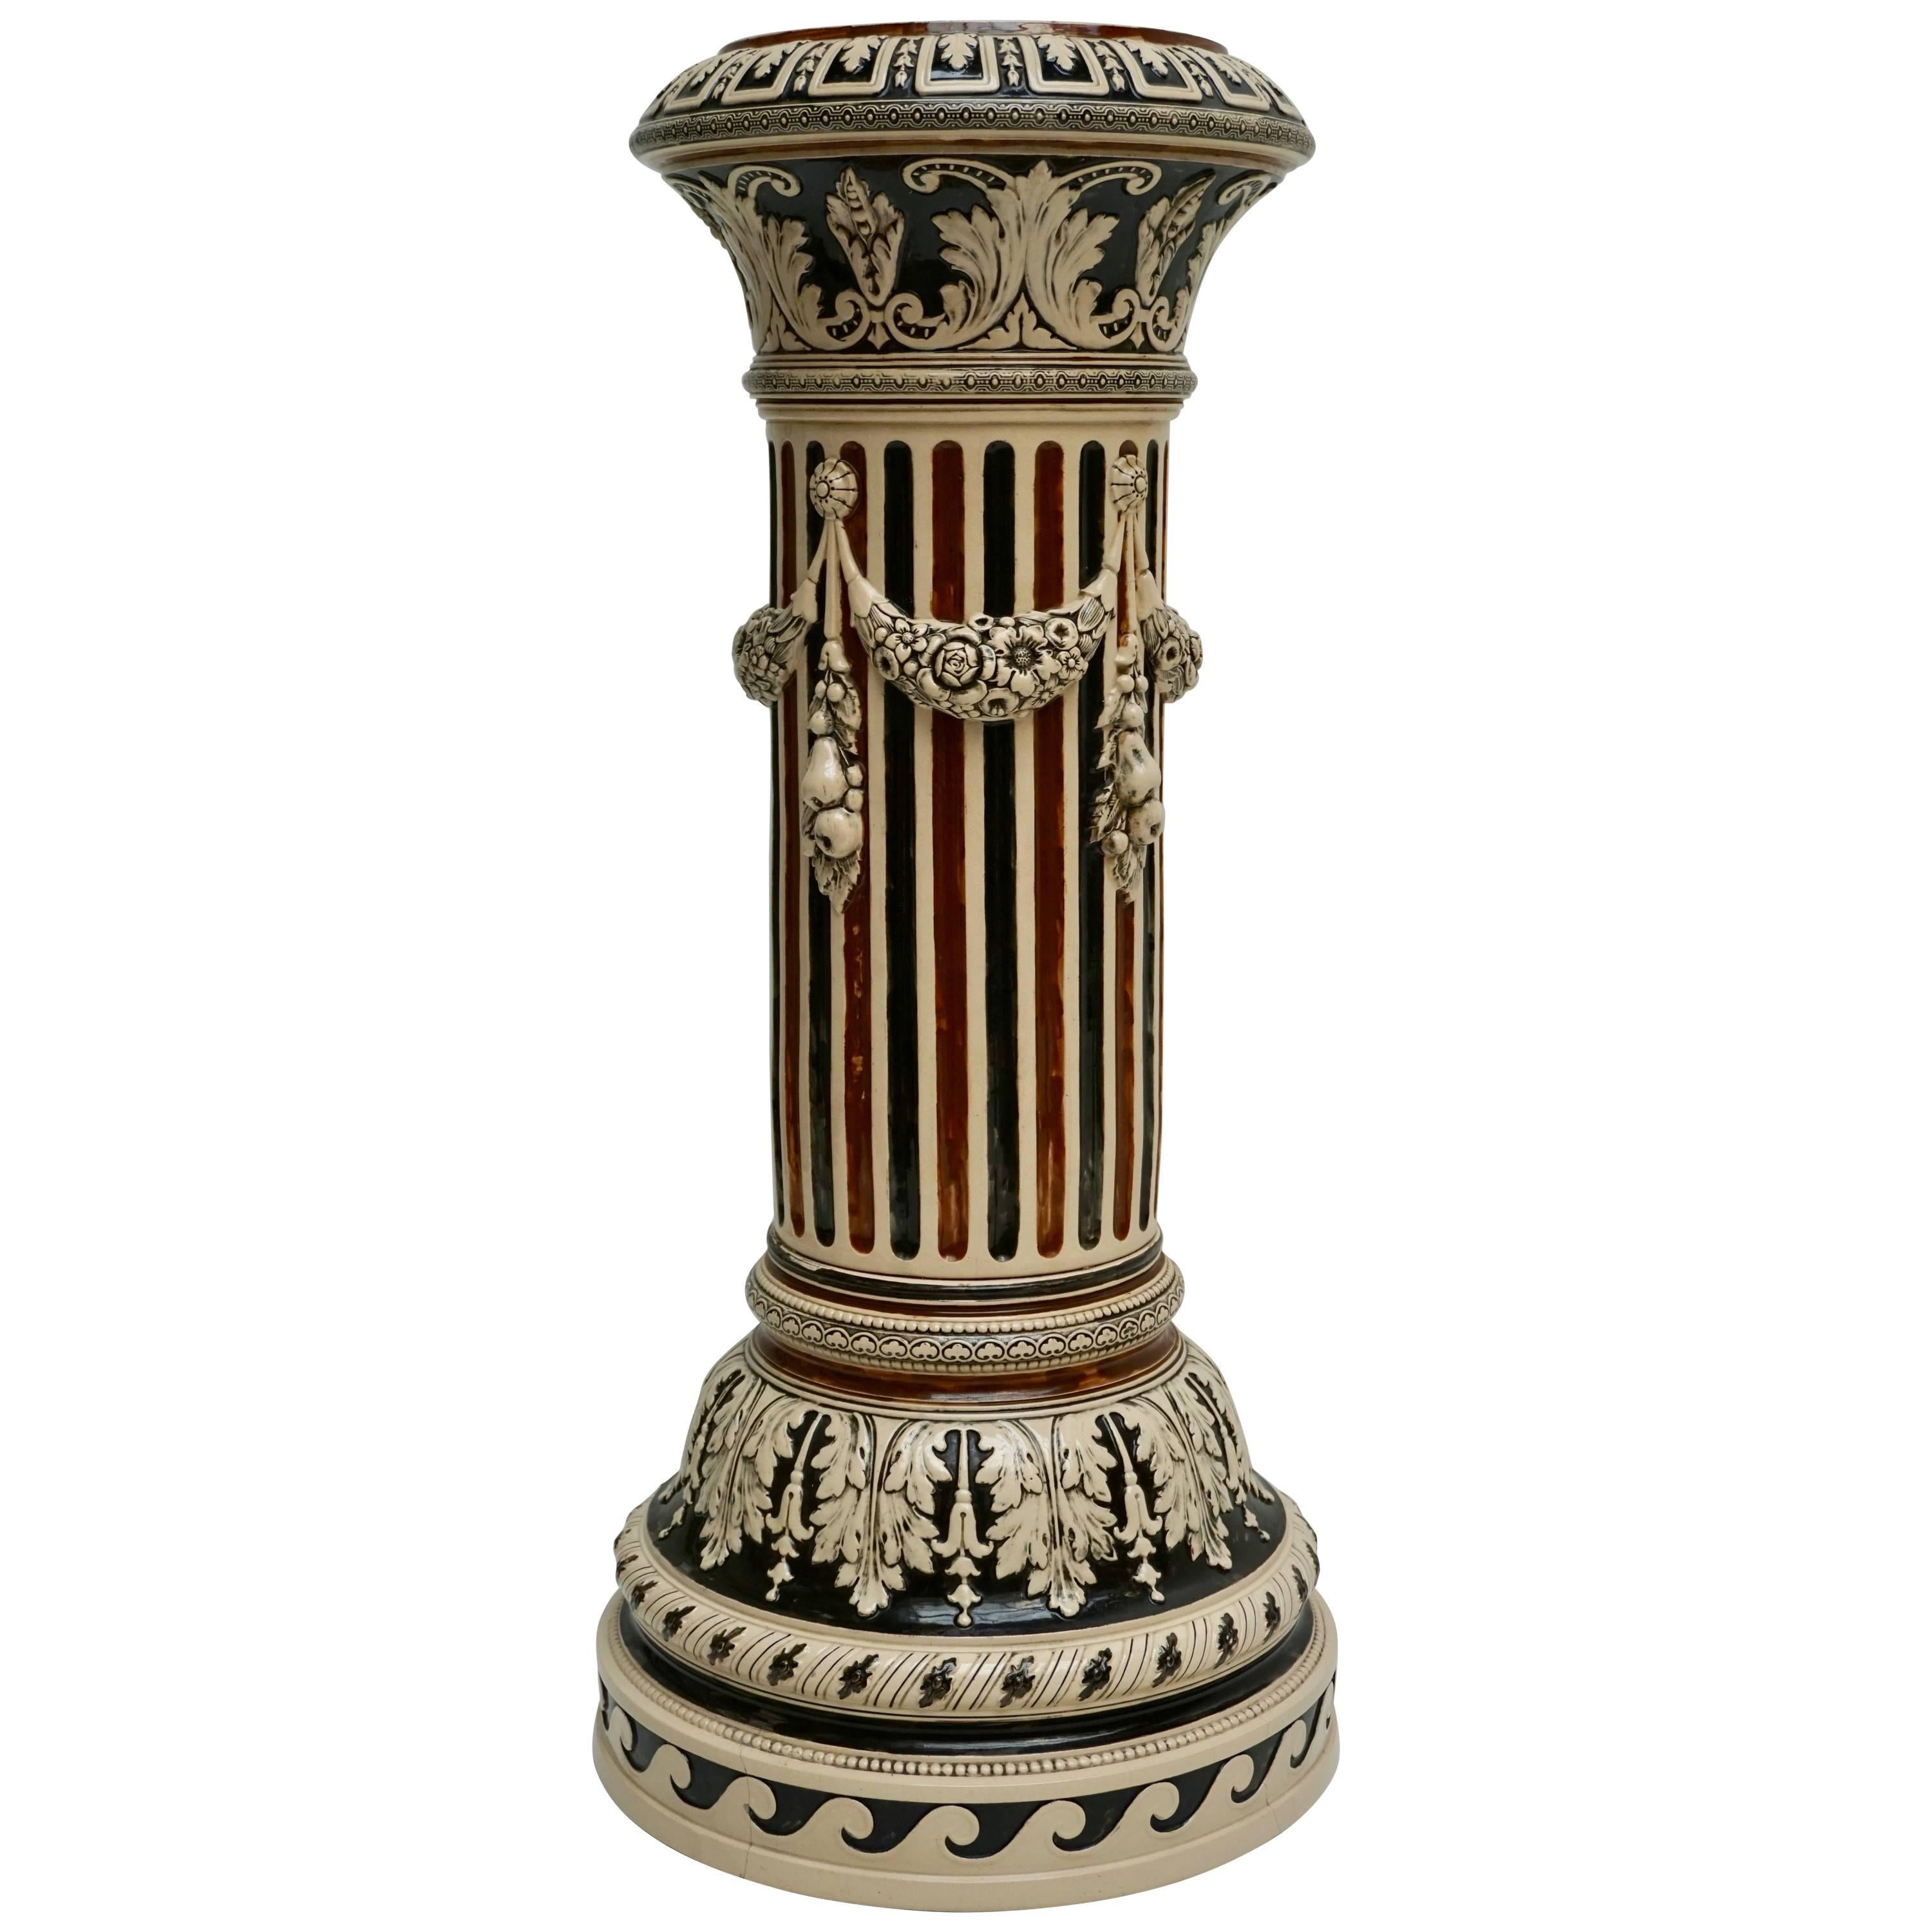 Two Italian Ceramic Pedestals or Columns